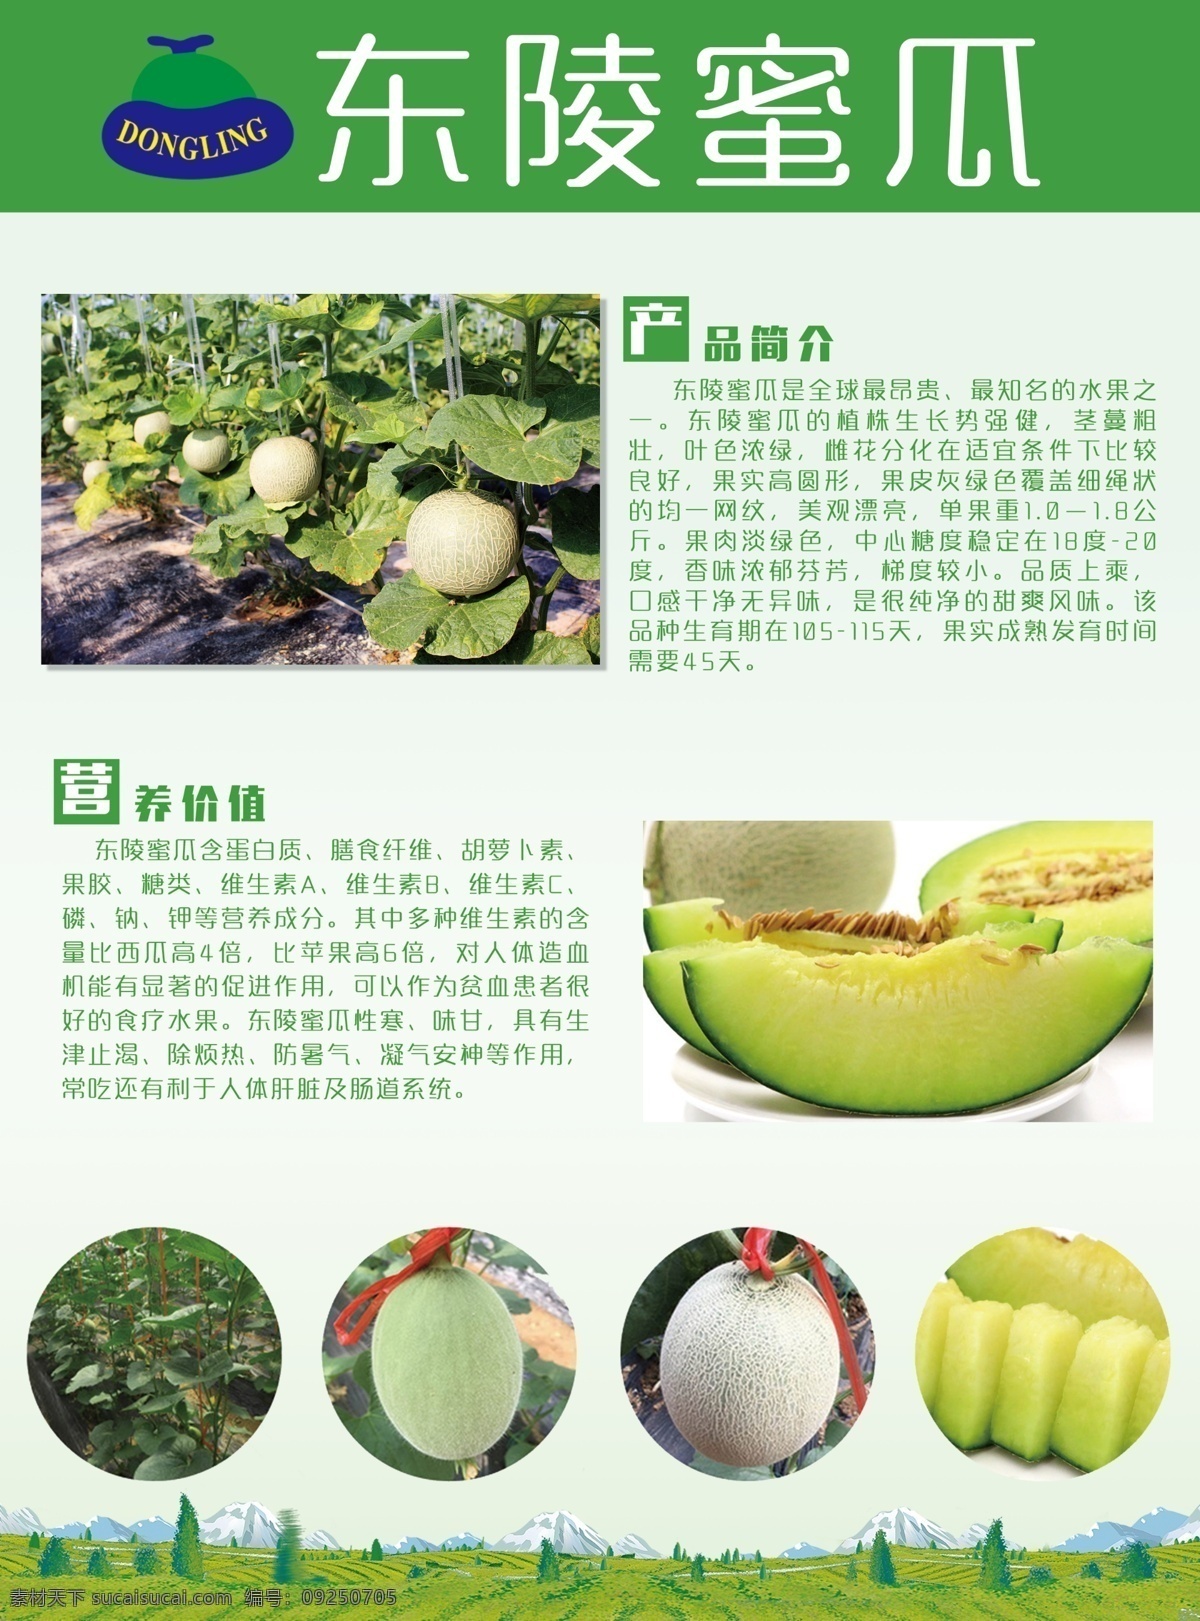 水果宣传页 水果 蜜瓜 网纹瓜 切开 土地 绿色北京 树林 简约 彩页 dm 分层